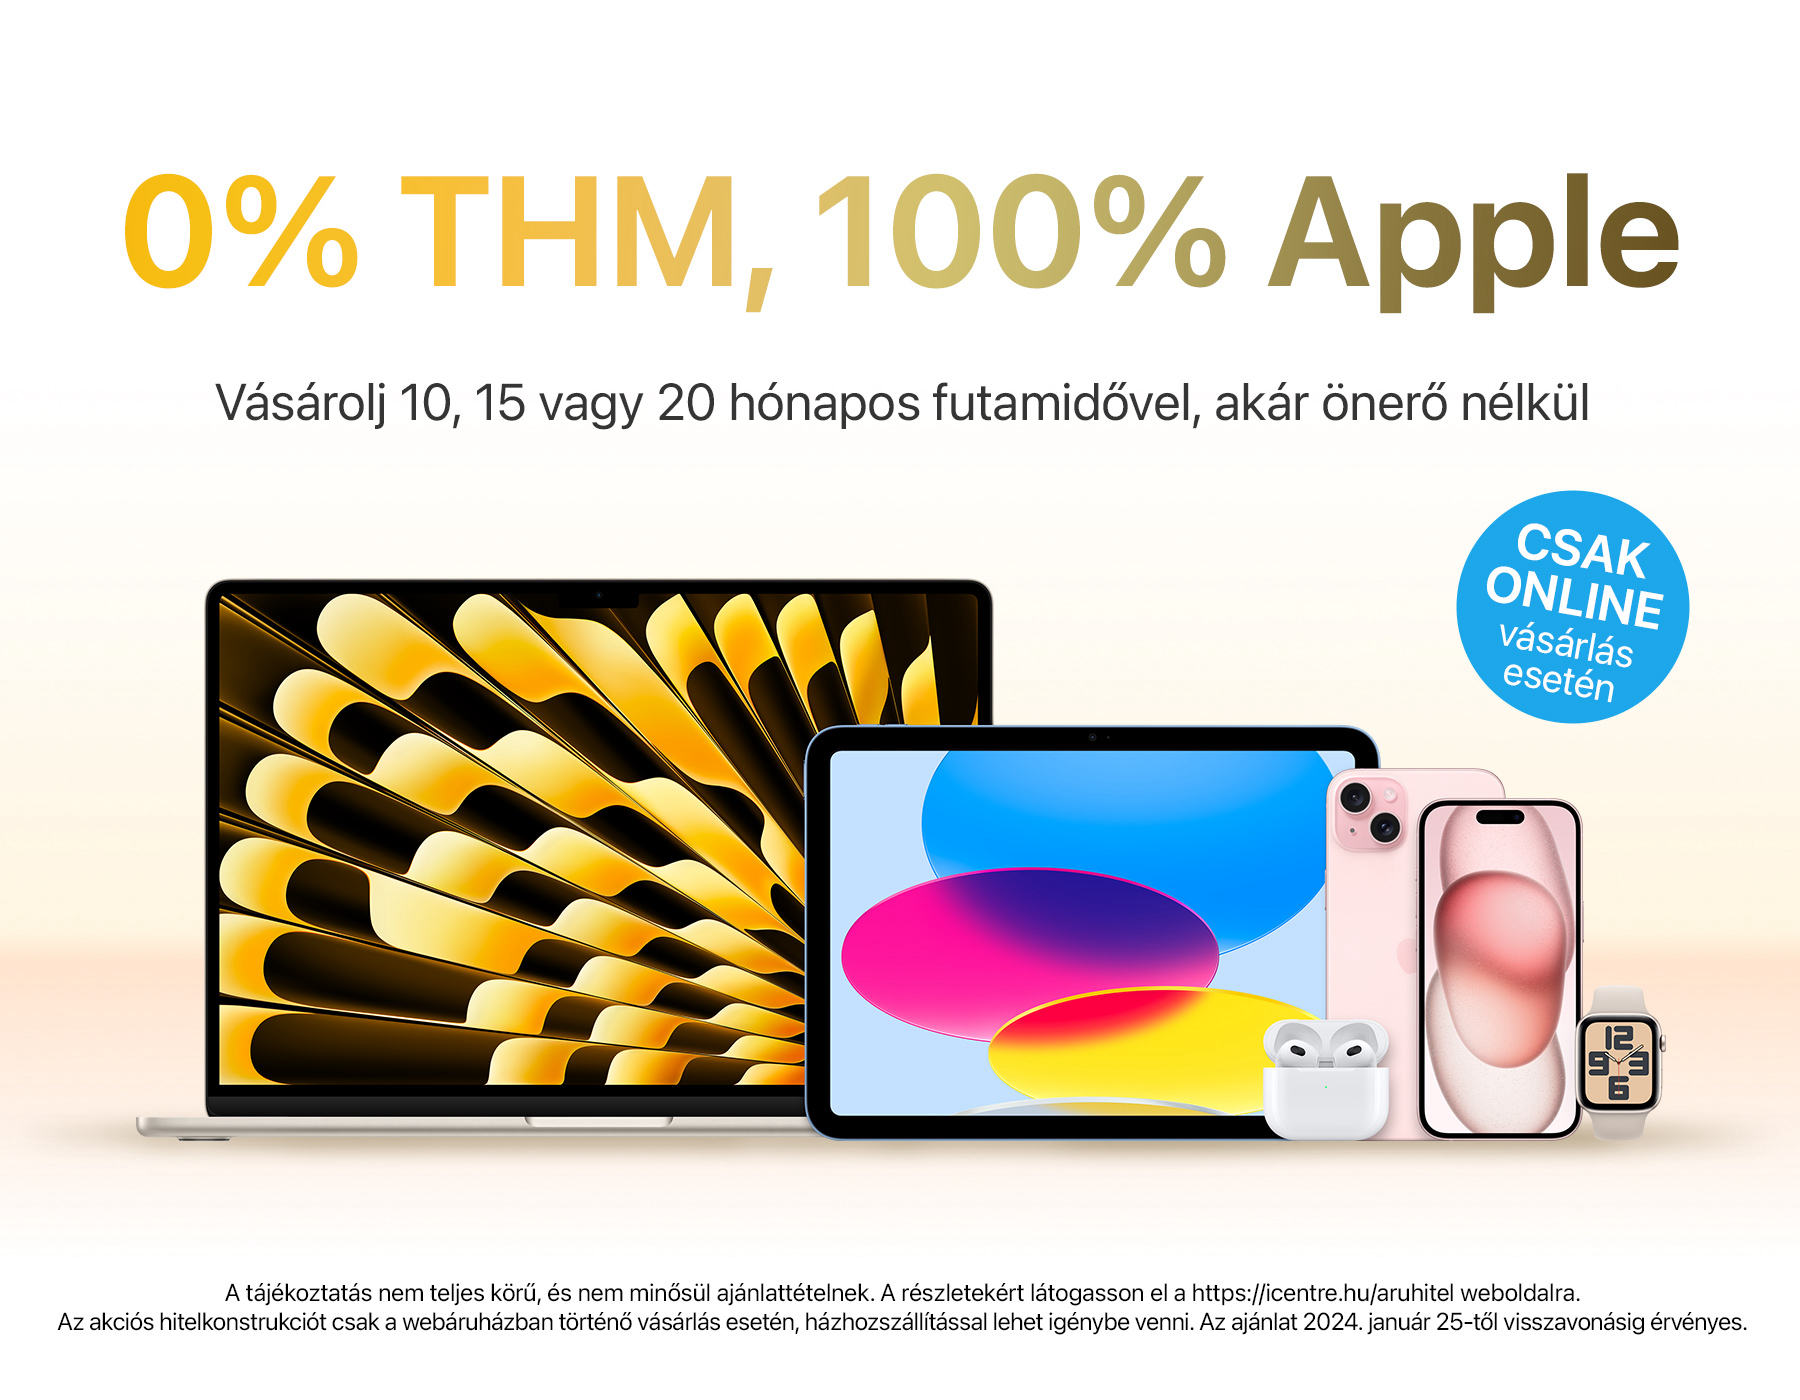 Apple termékek most 0% THM-mel vihetőek haza